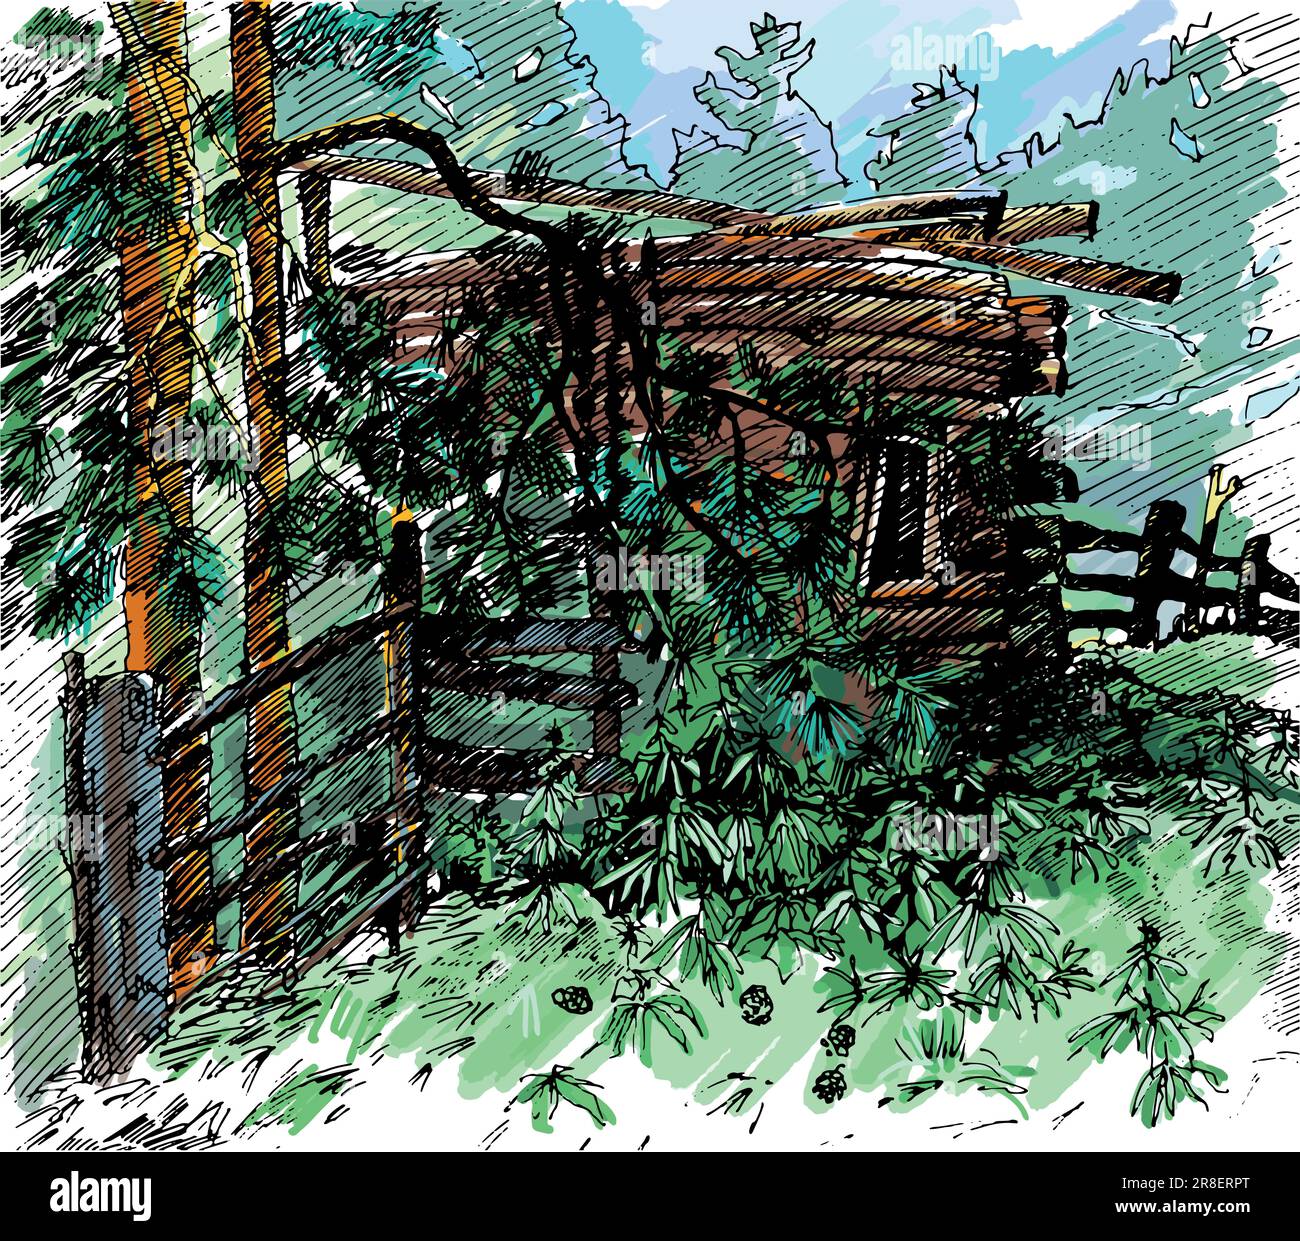 Paesaggio rurale in stile grafico, disegnato a mano e convertito in Illustrazione vettoriale. Illustrazione Vettoriale